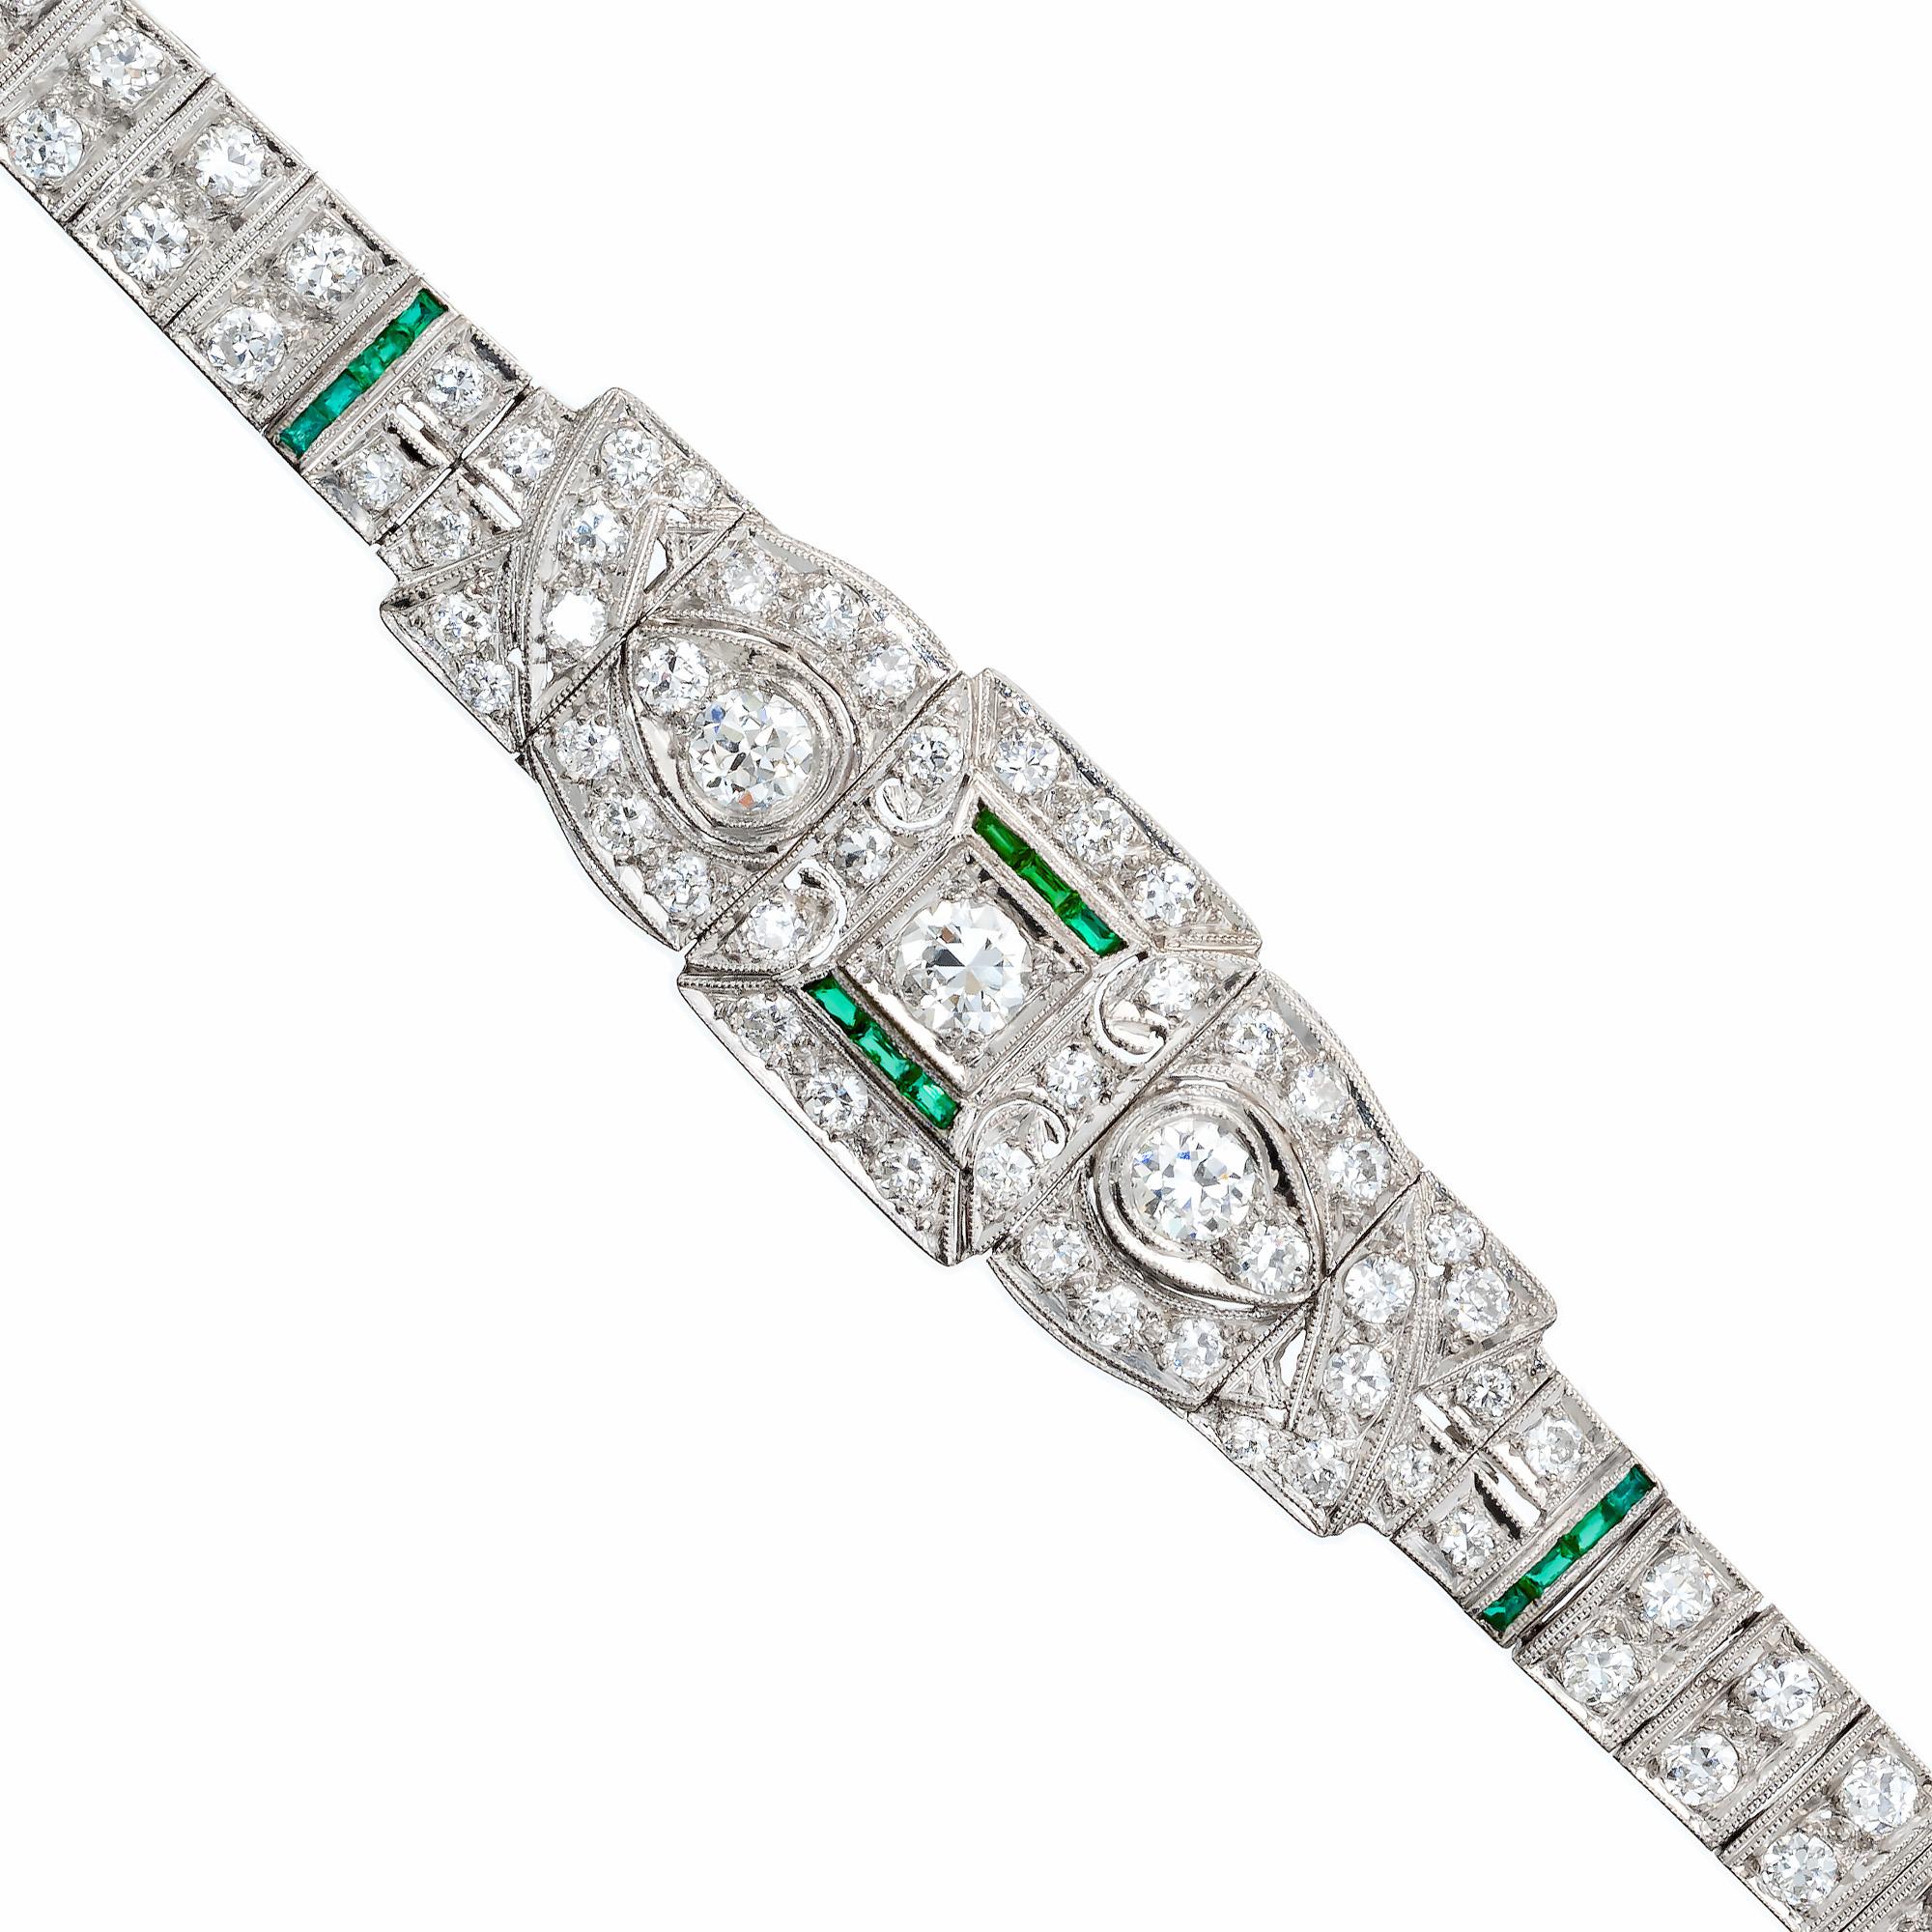 Art-Déco-Armband mit Diamanten und Smaragden aus den 1920er Jahren. Dieses exquisite Platinarmband im Art-Déco-Stil besteht aus 3 Diamanten im alten europäischen Schliff, wobei der Mittelstein teilweise von einem halben Halo aus 14 Smaragden im